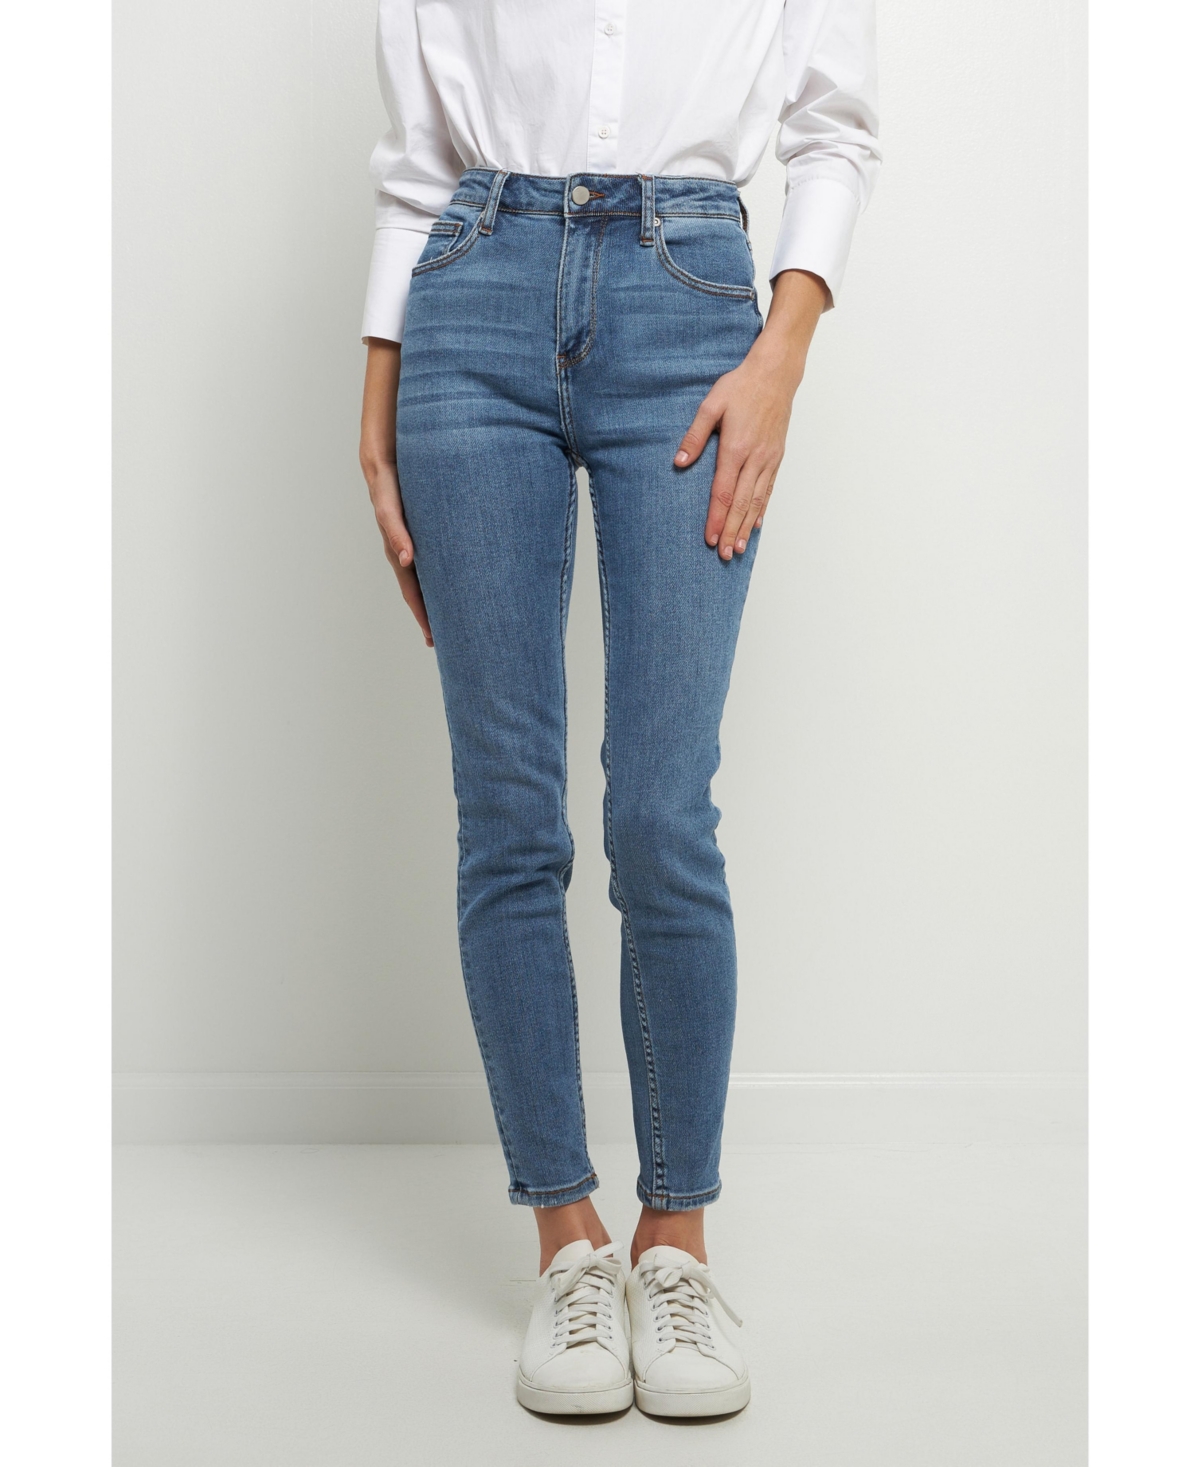 Women's Midi Waist Skinny Ankle Jeans - Denim